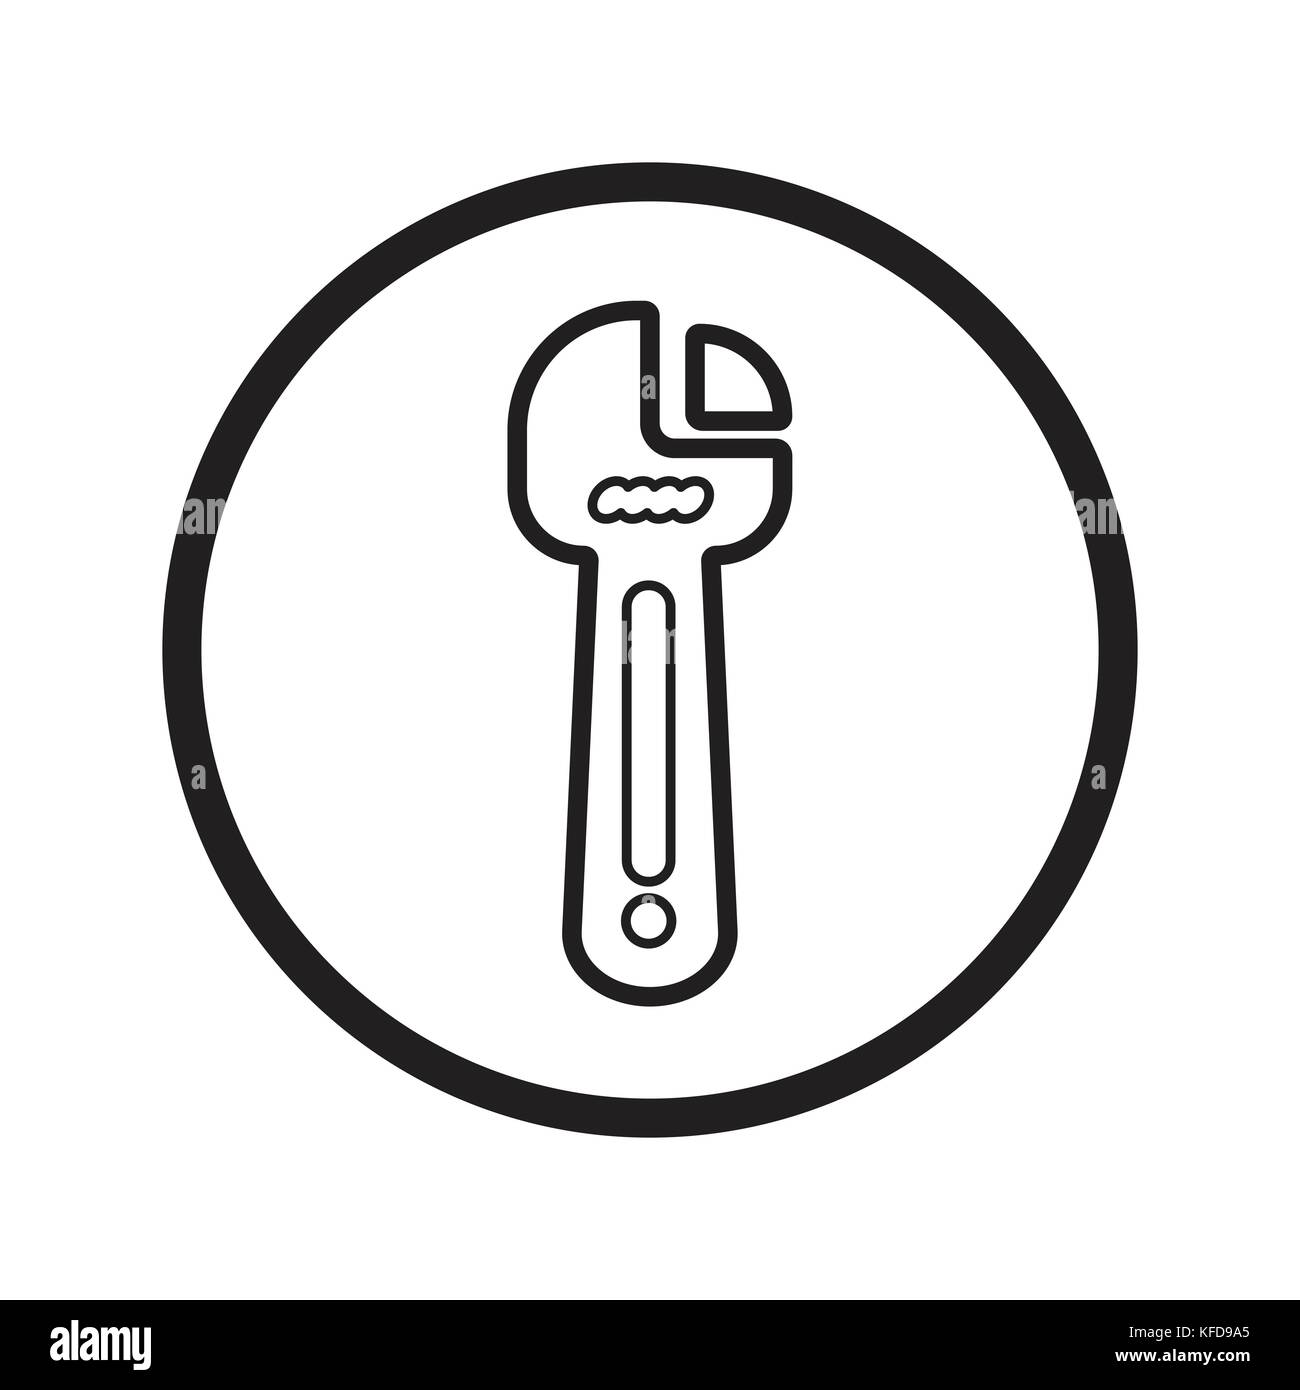 Chiave lineare icona Riparazione, fix tools simbolo iconico all'interno di un cerchio, su sfondo bianco. vettore design iconico. Illustrazione Vettoriale